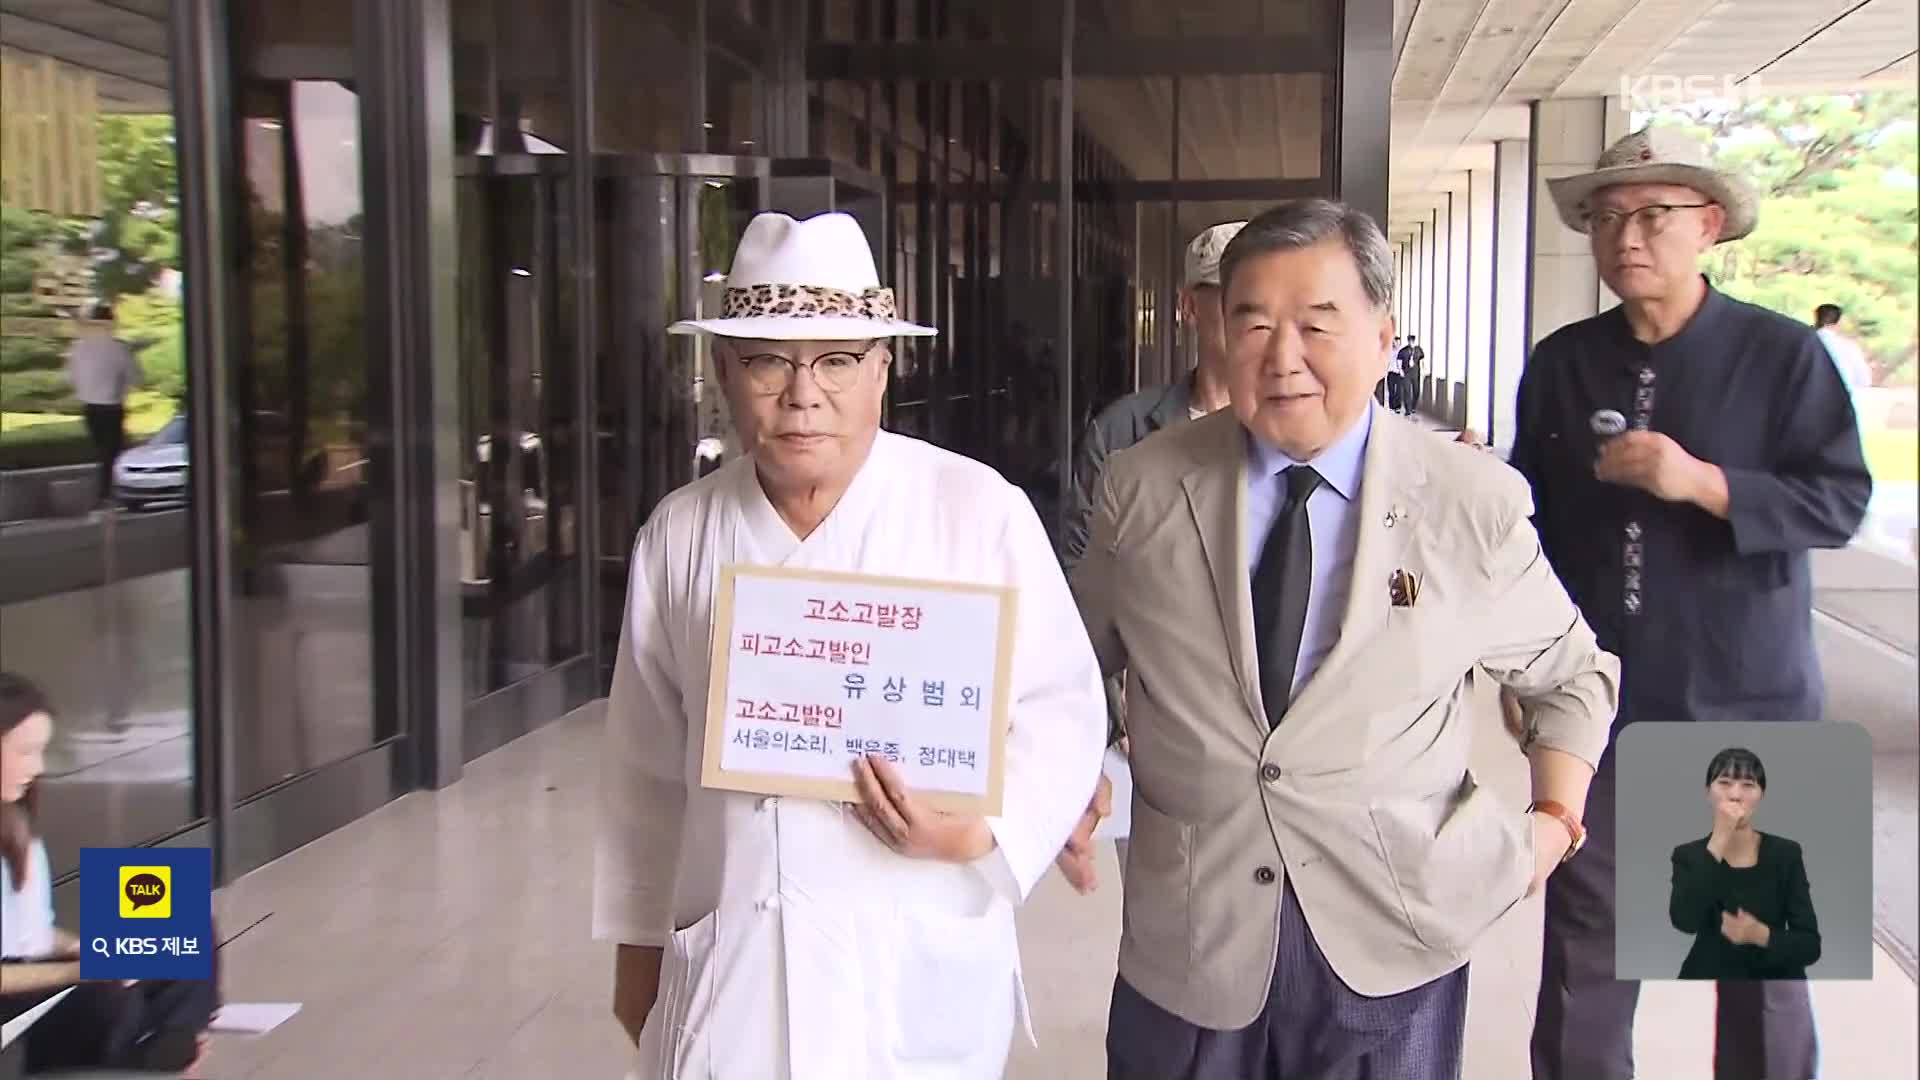 ‘탄핵 공작’ 의혹에 “허위 제보”…서울의소리 여당 의원 고소